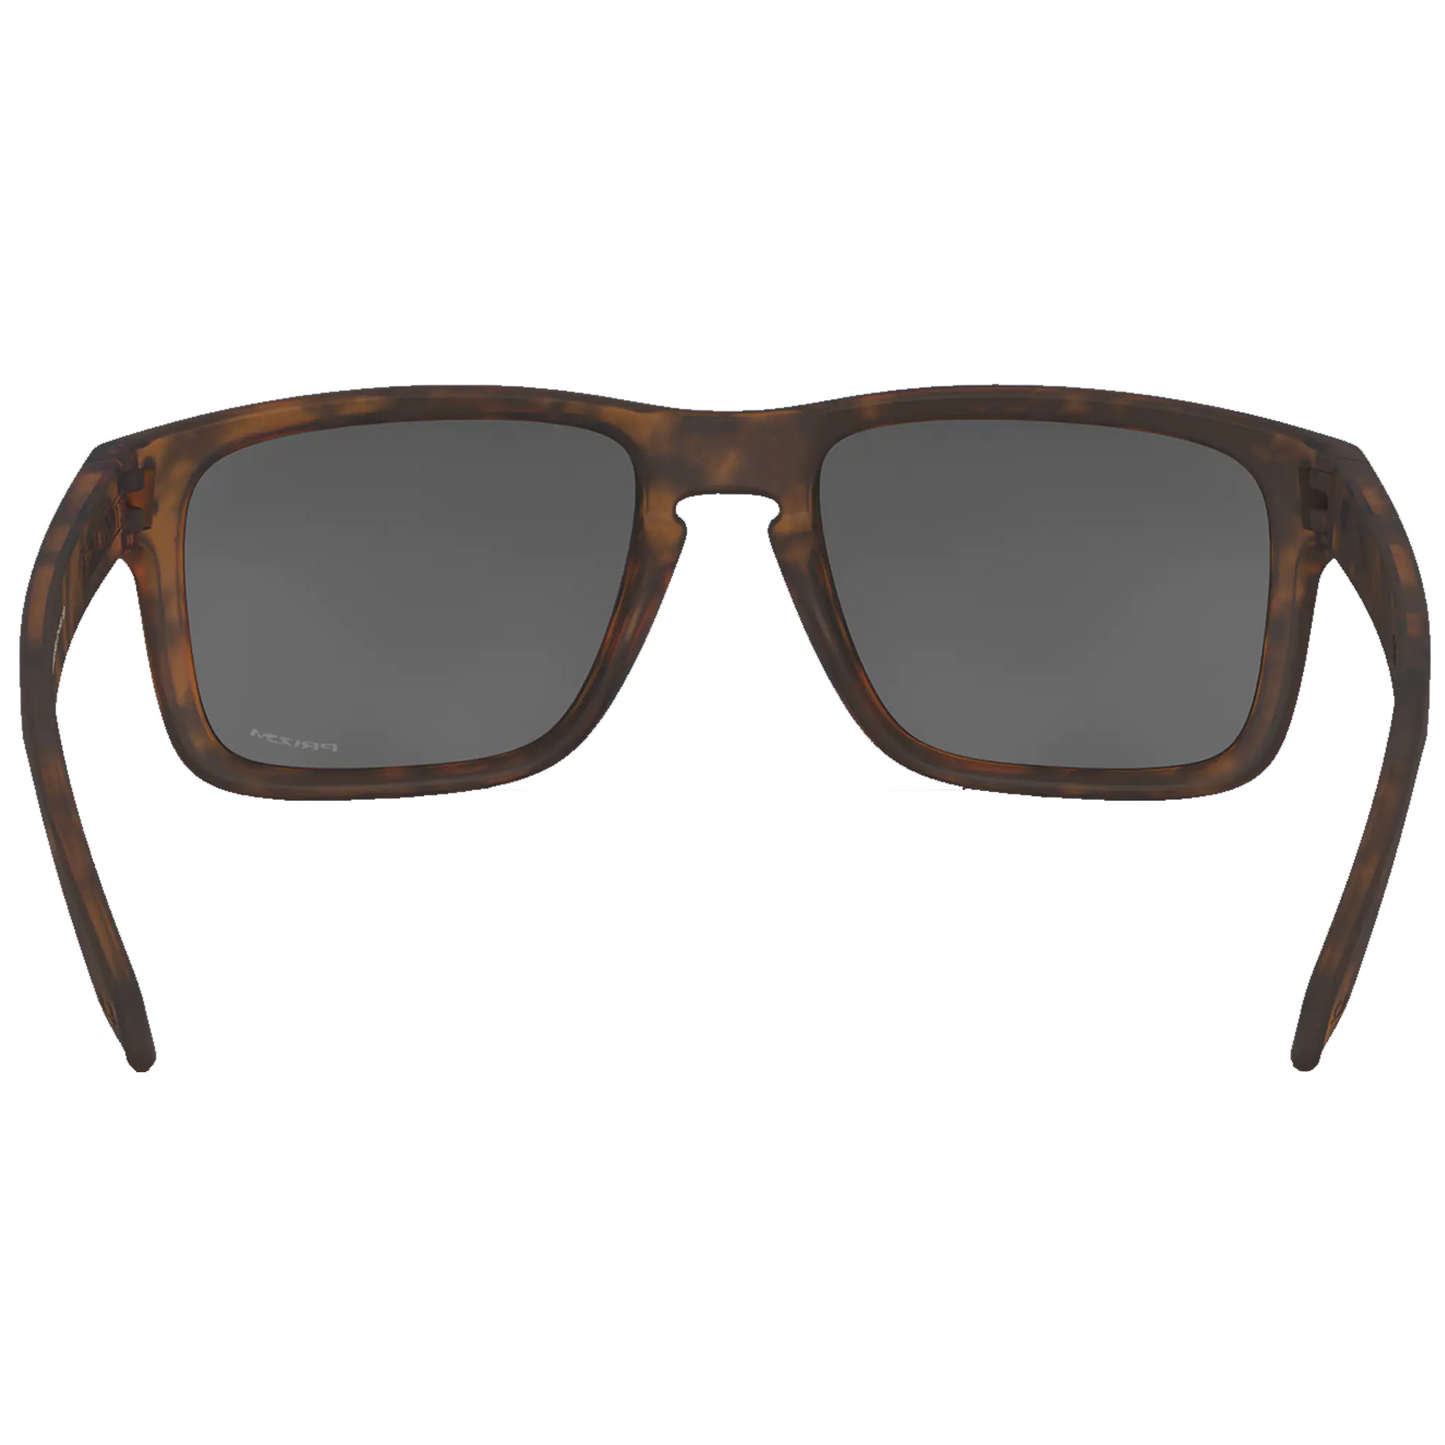 Oakley Holbrook Sunglasses (Matte Brown Tortoise) Prizm Black Lens - Free Case